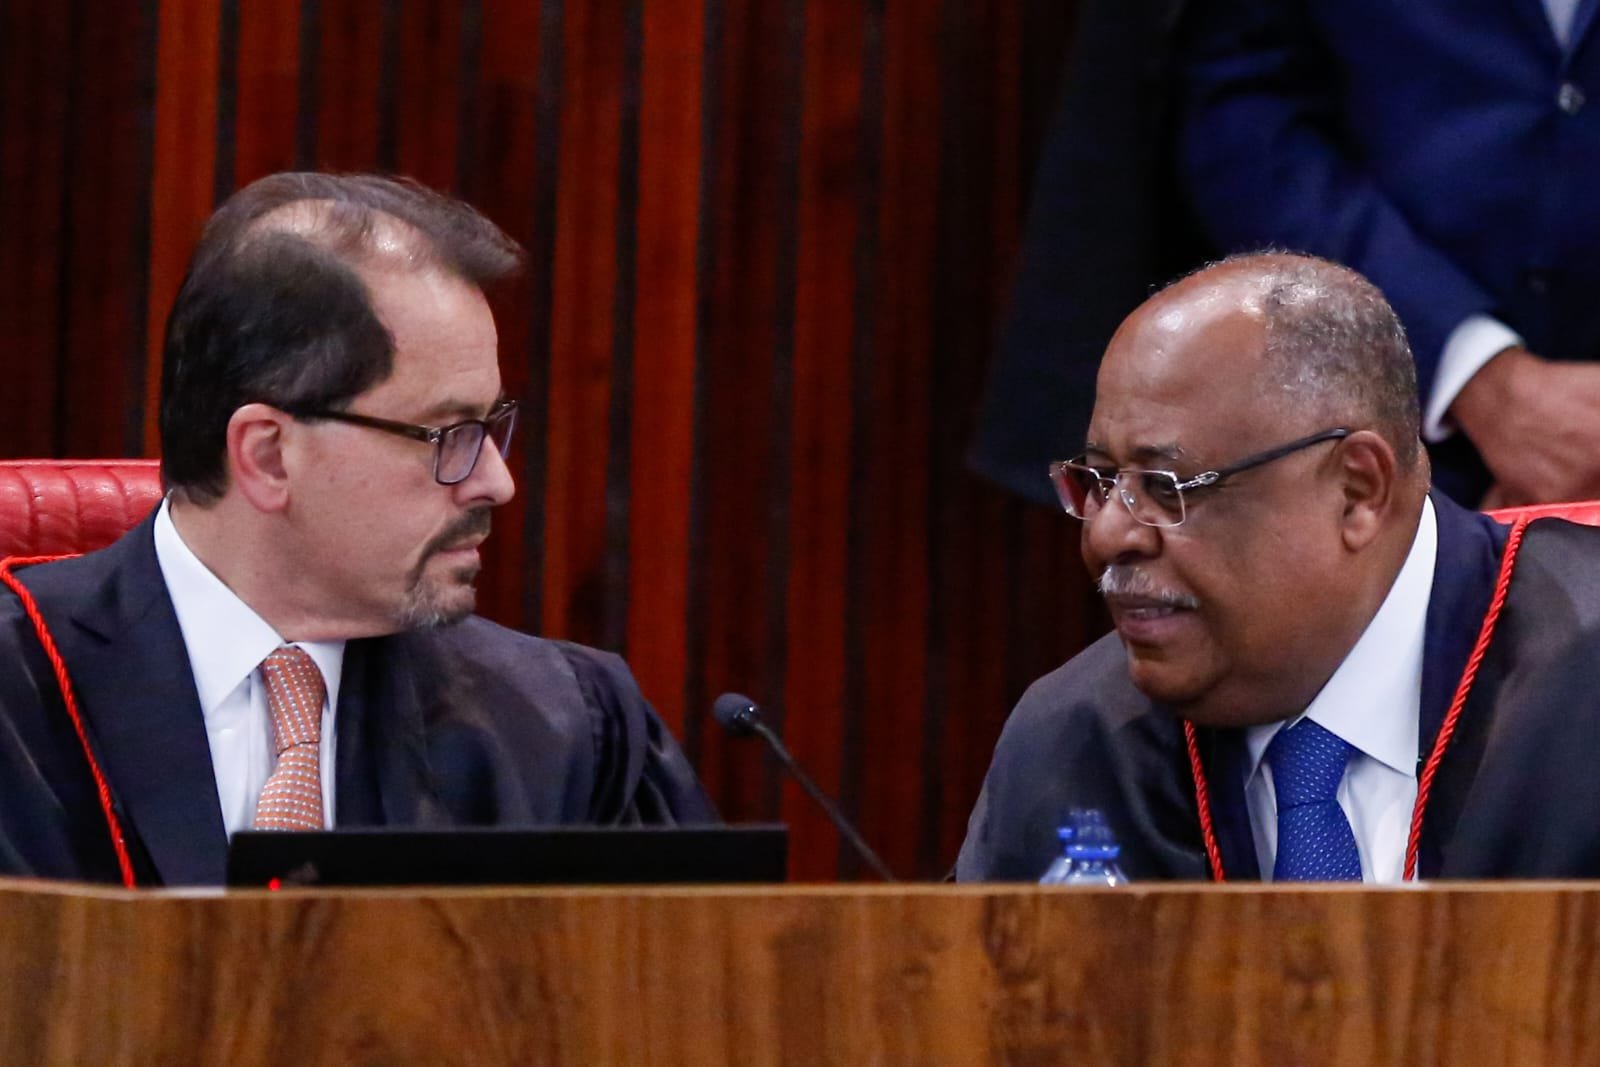 Ministros Floriano de Azevedo e Benedito Gonçalves, relator da ação que pede inegibilidade do ex-presidente Jair Bolsonaro